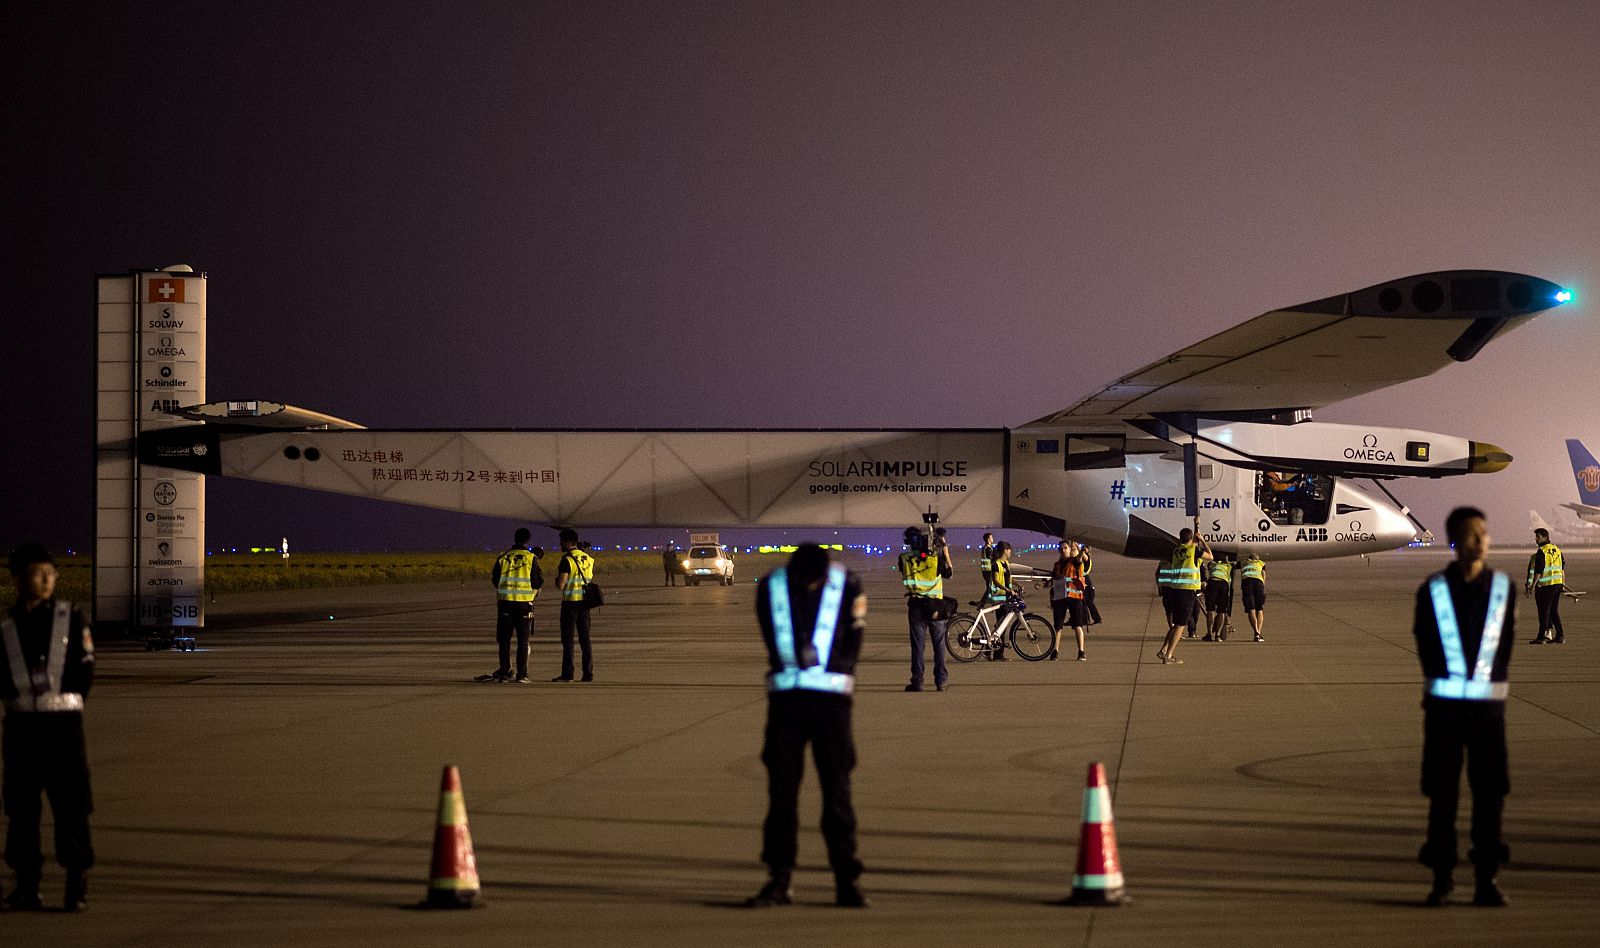 El avión solar Impulse II antes de despegar en el Aeropuerto Internacional de Nanjing Lukou en Nanjing.